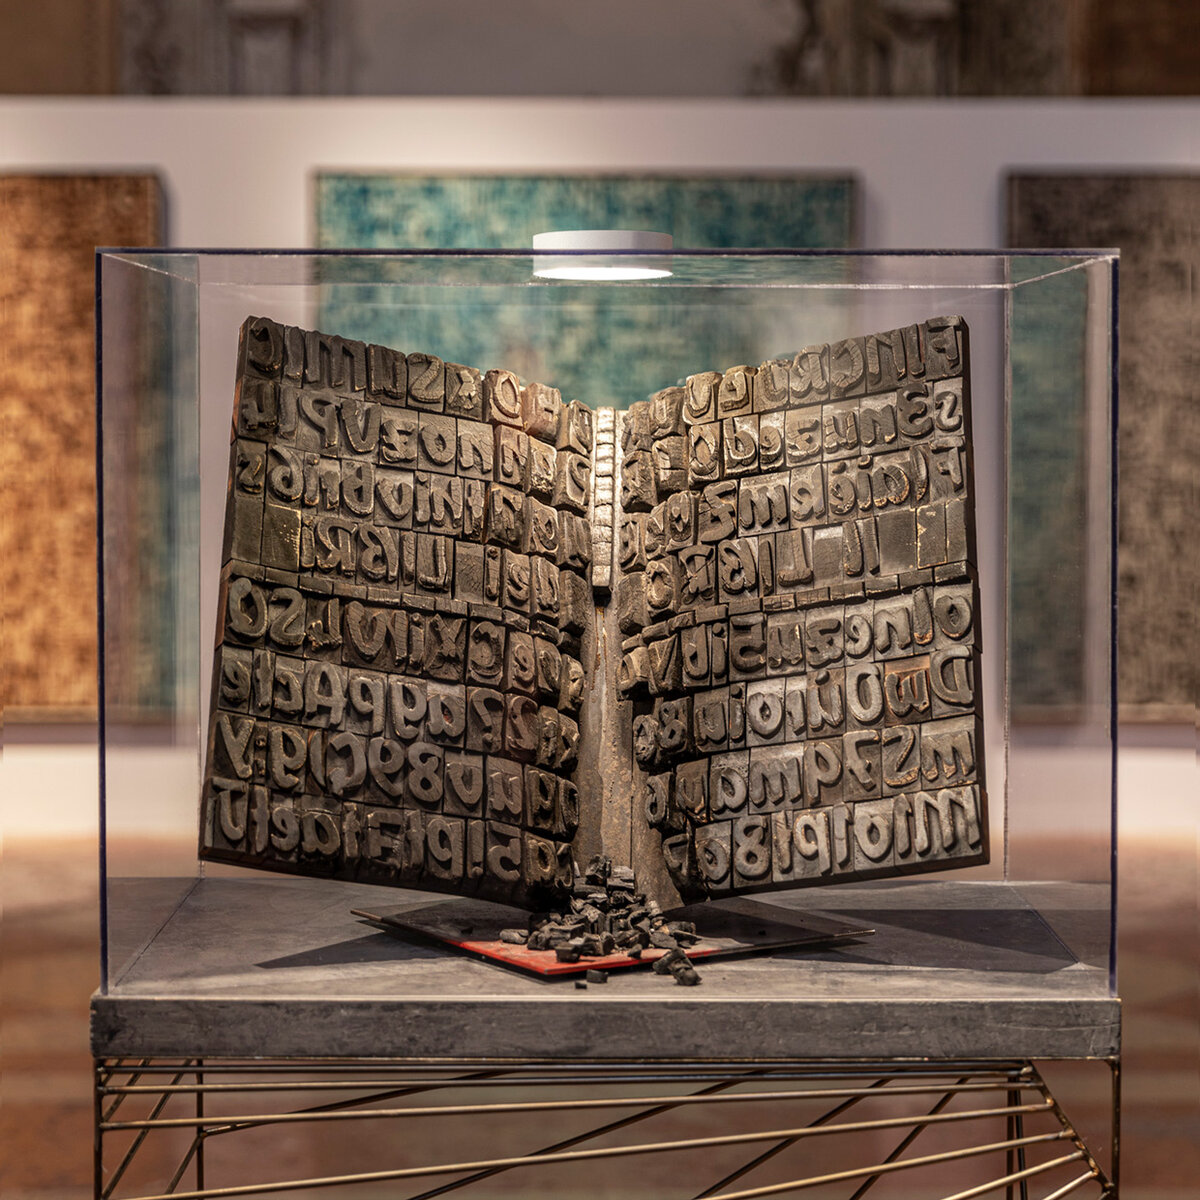 Mostra "La Scrittura come Enigma" | © Davide Groppi srl | All Rights Reserved